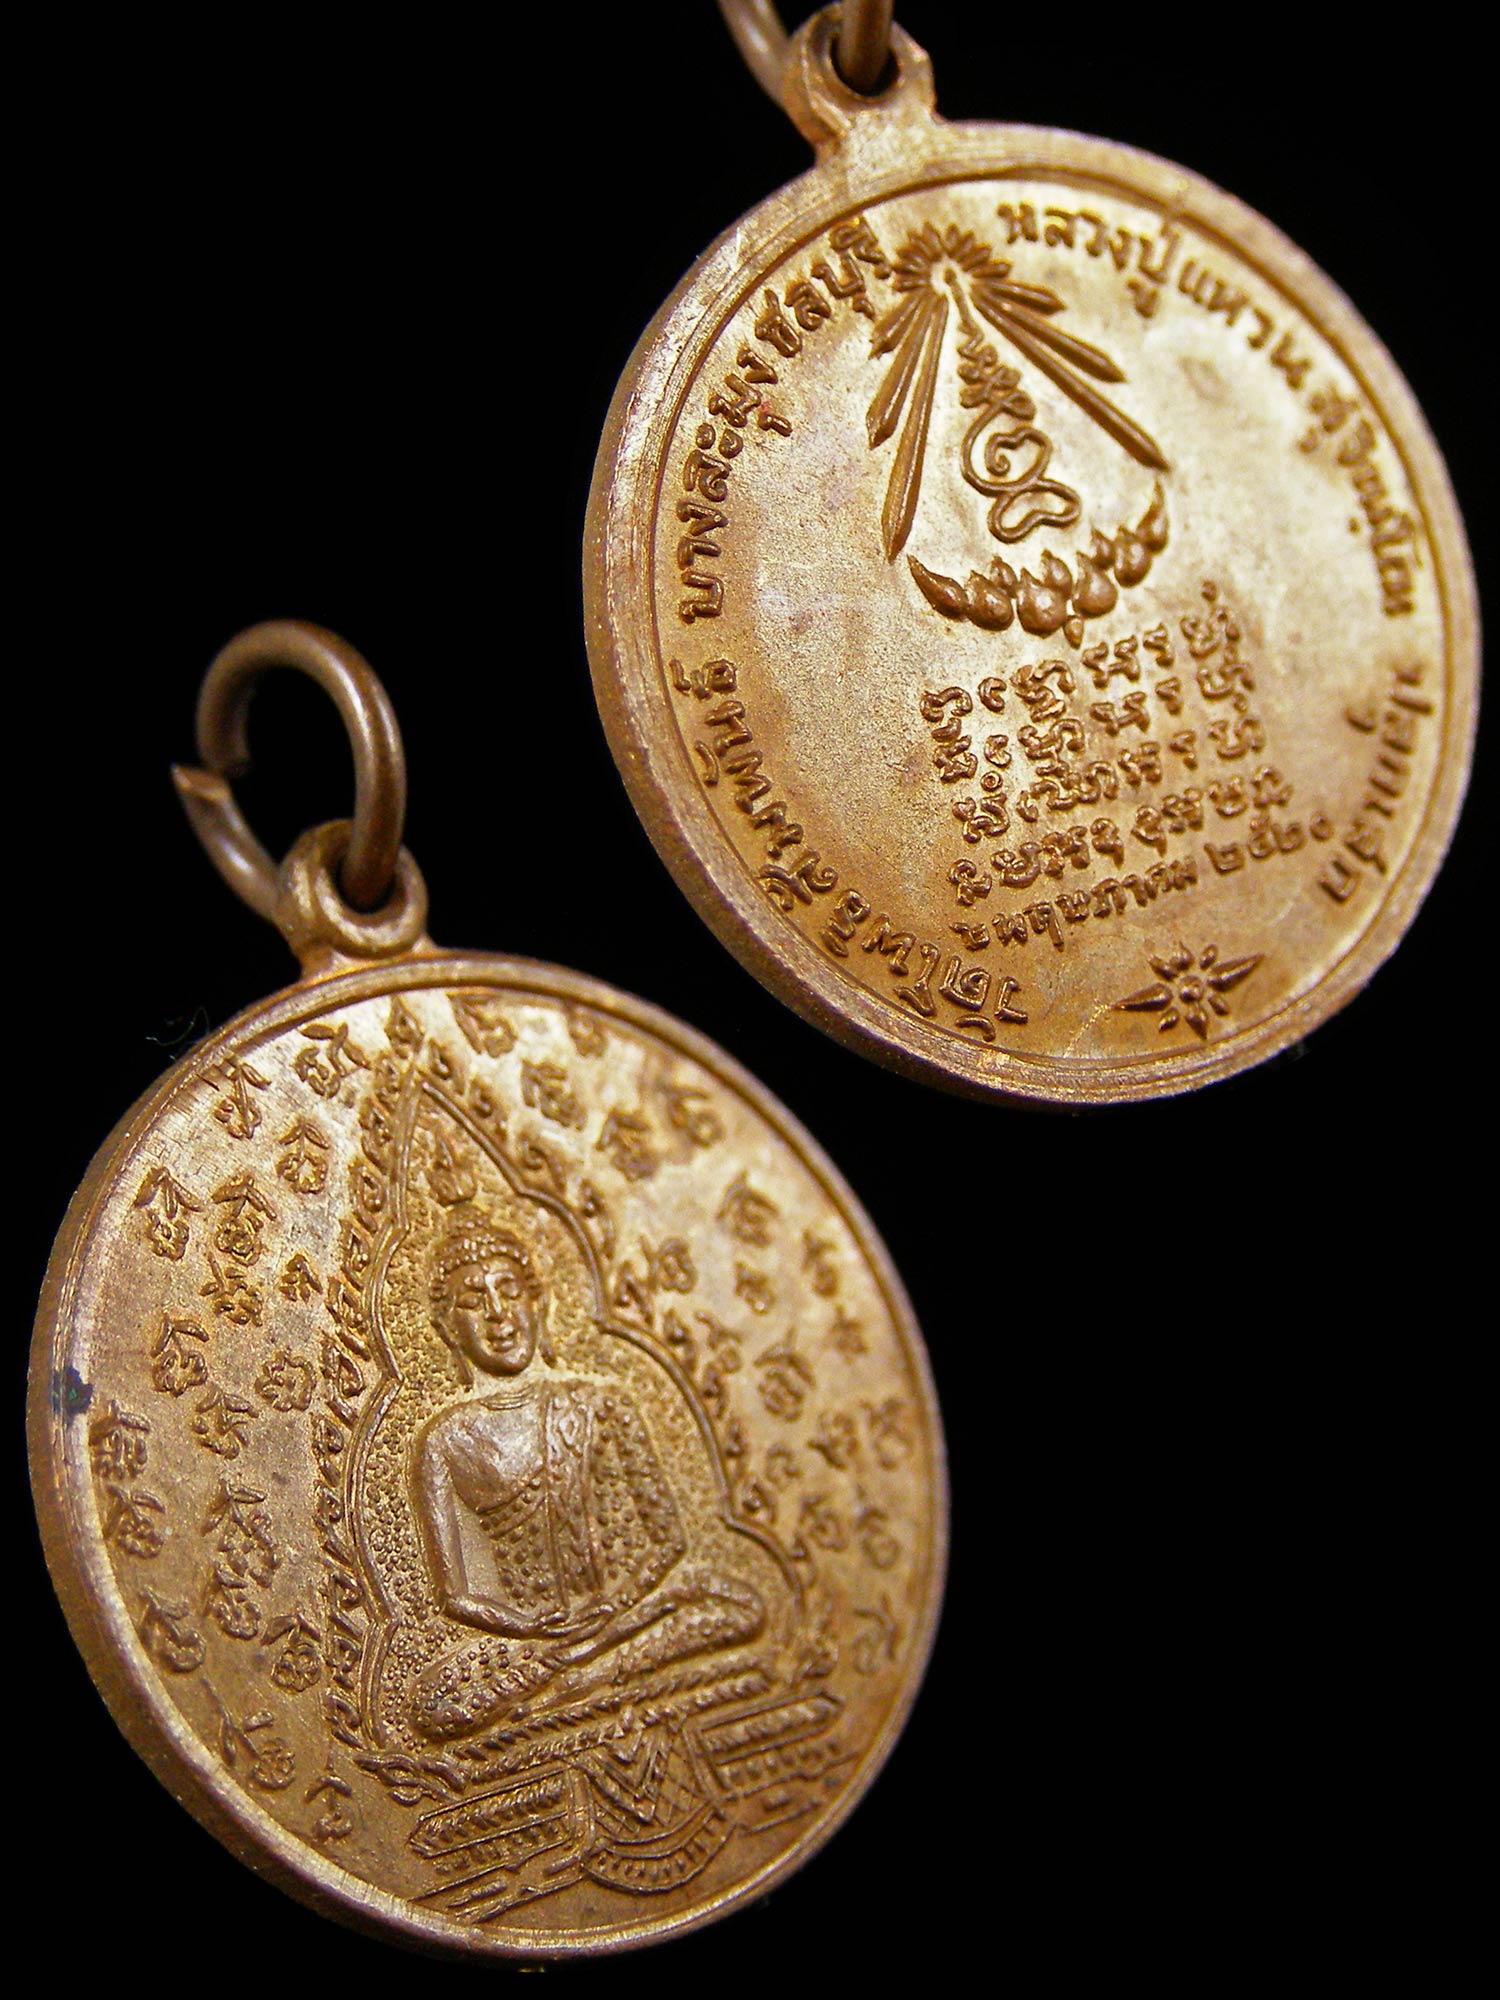 เหรียญพระแก้วมรกต หลวงปู่แหวนปลุกเสก วัดโพธิสัมพันธ์ ชลบุรี ปี2520 เนื้อทองแดง  